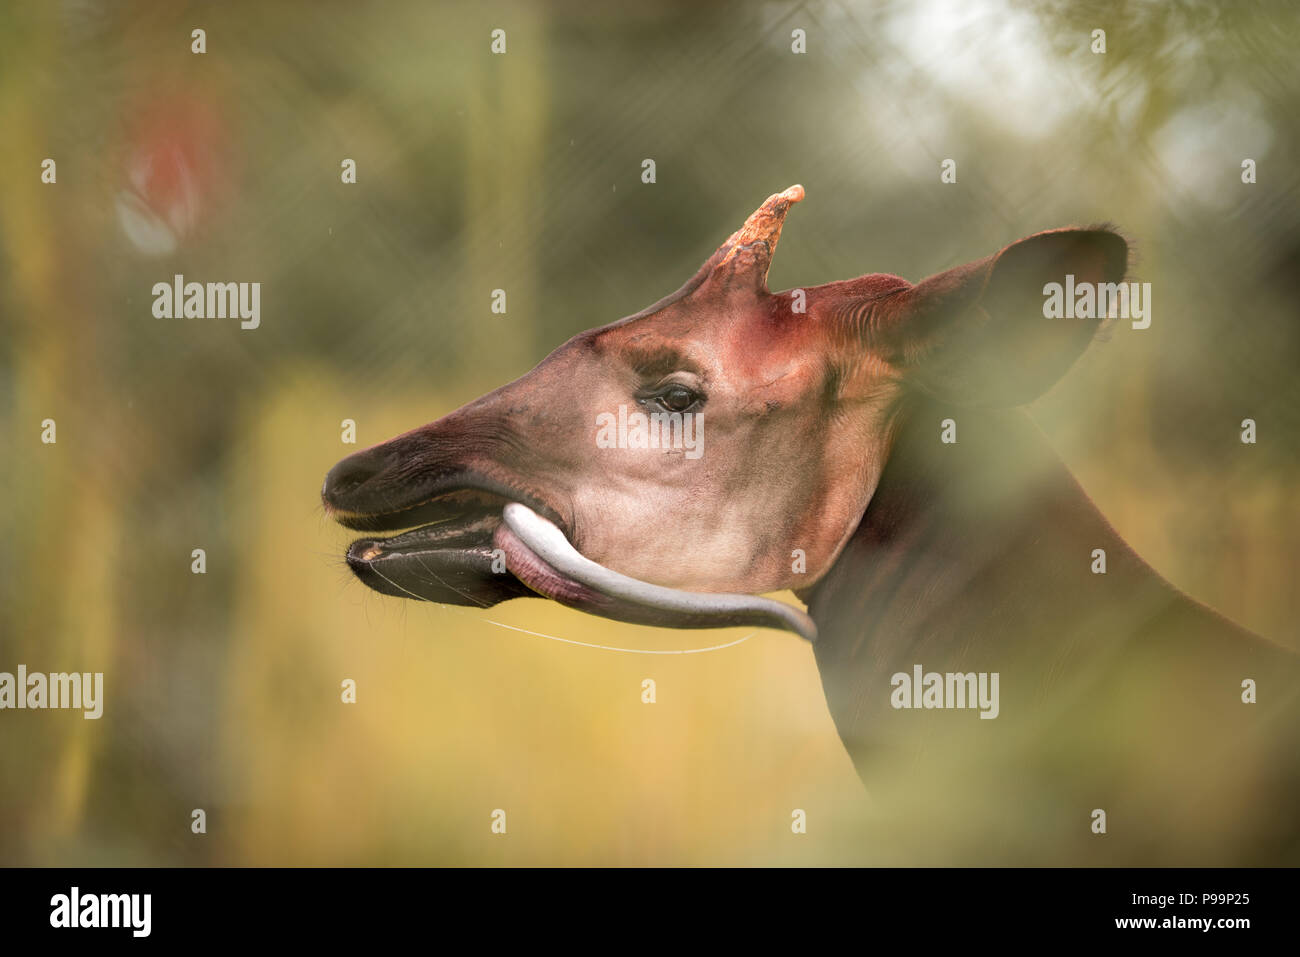 Okapi Nahaufnahme Portrait von egsotic gefährdete Tier, okapi setzt mit herausgestreckter Zunge Stockfoto